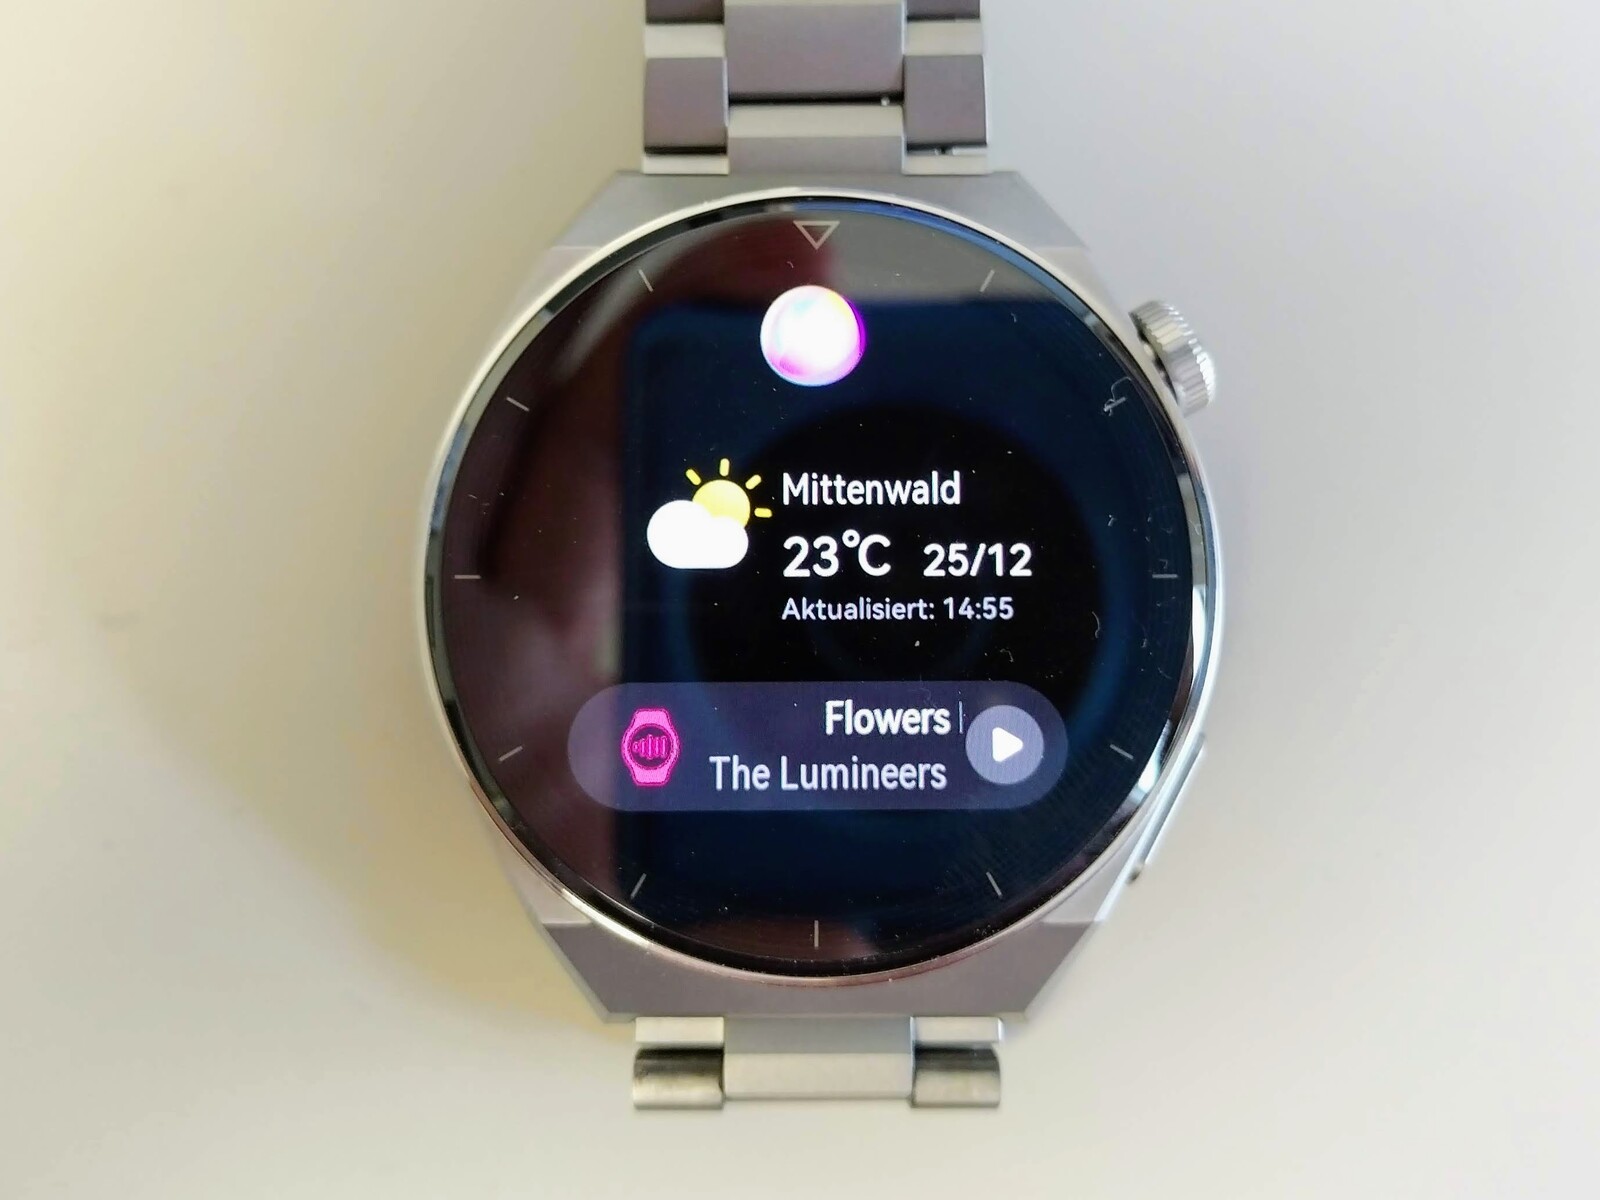 Smartwatch: g1 testa 3 relógios inteligentes lançados em 2022, Guia de  Compras